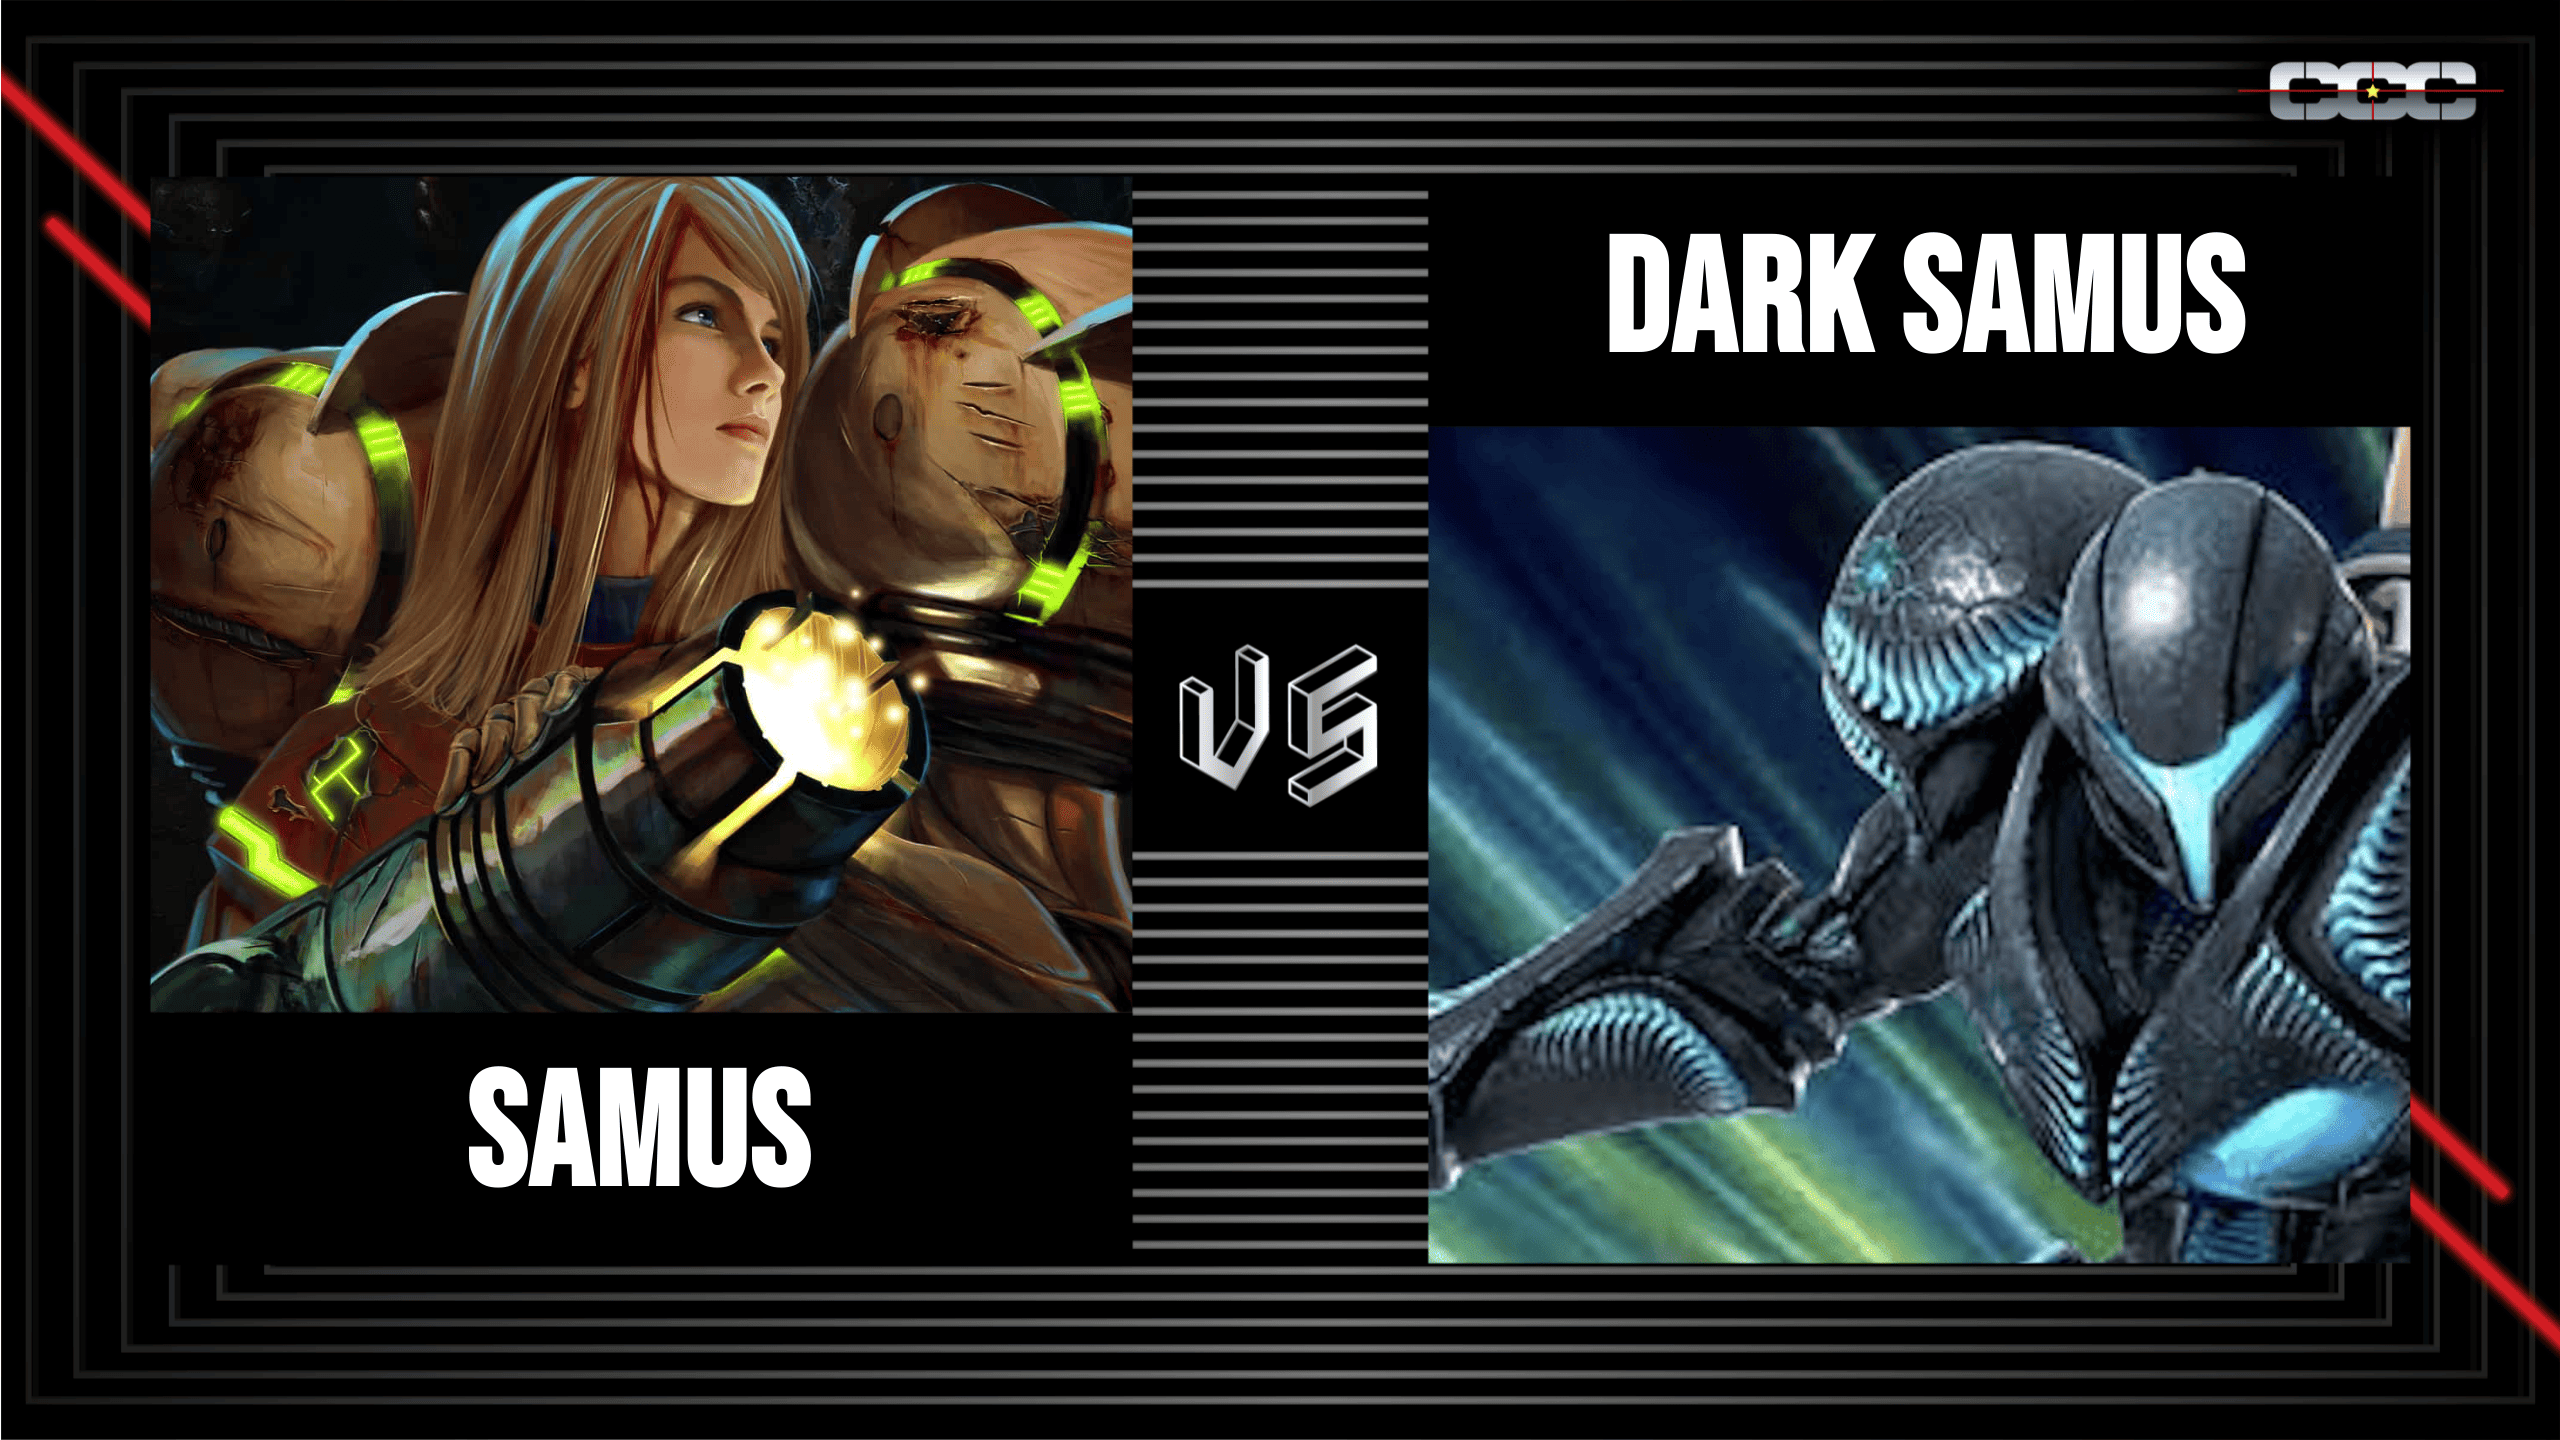 Samus vs. Dark Samus